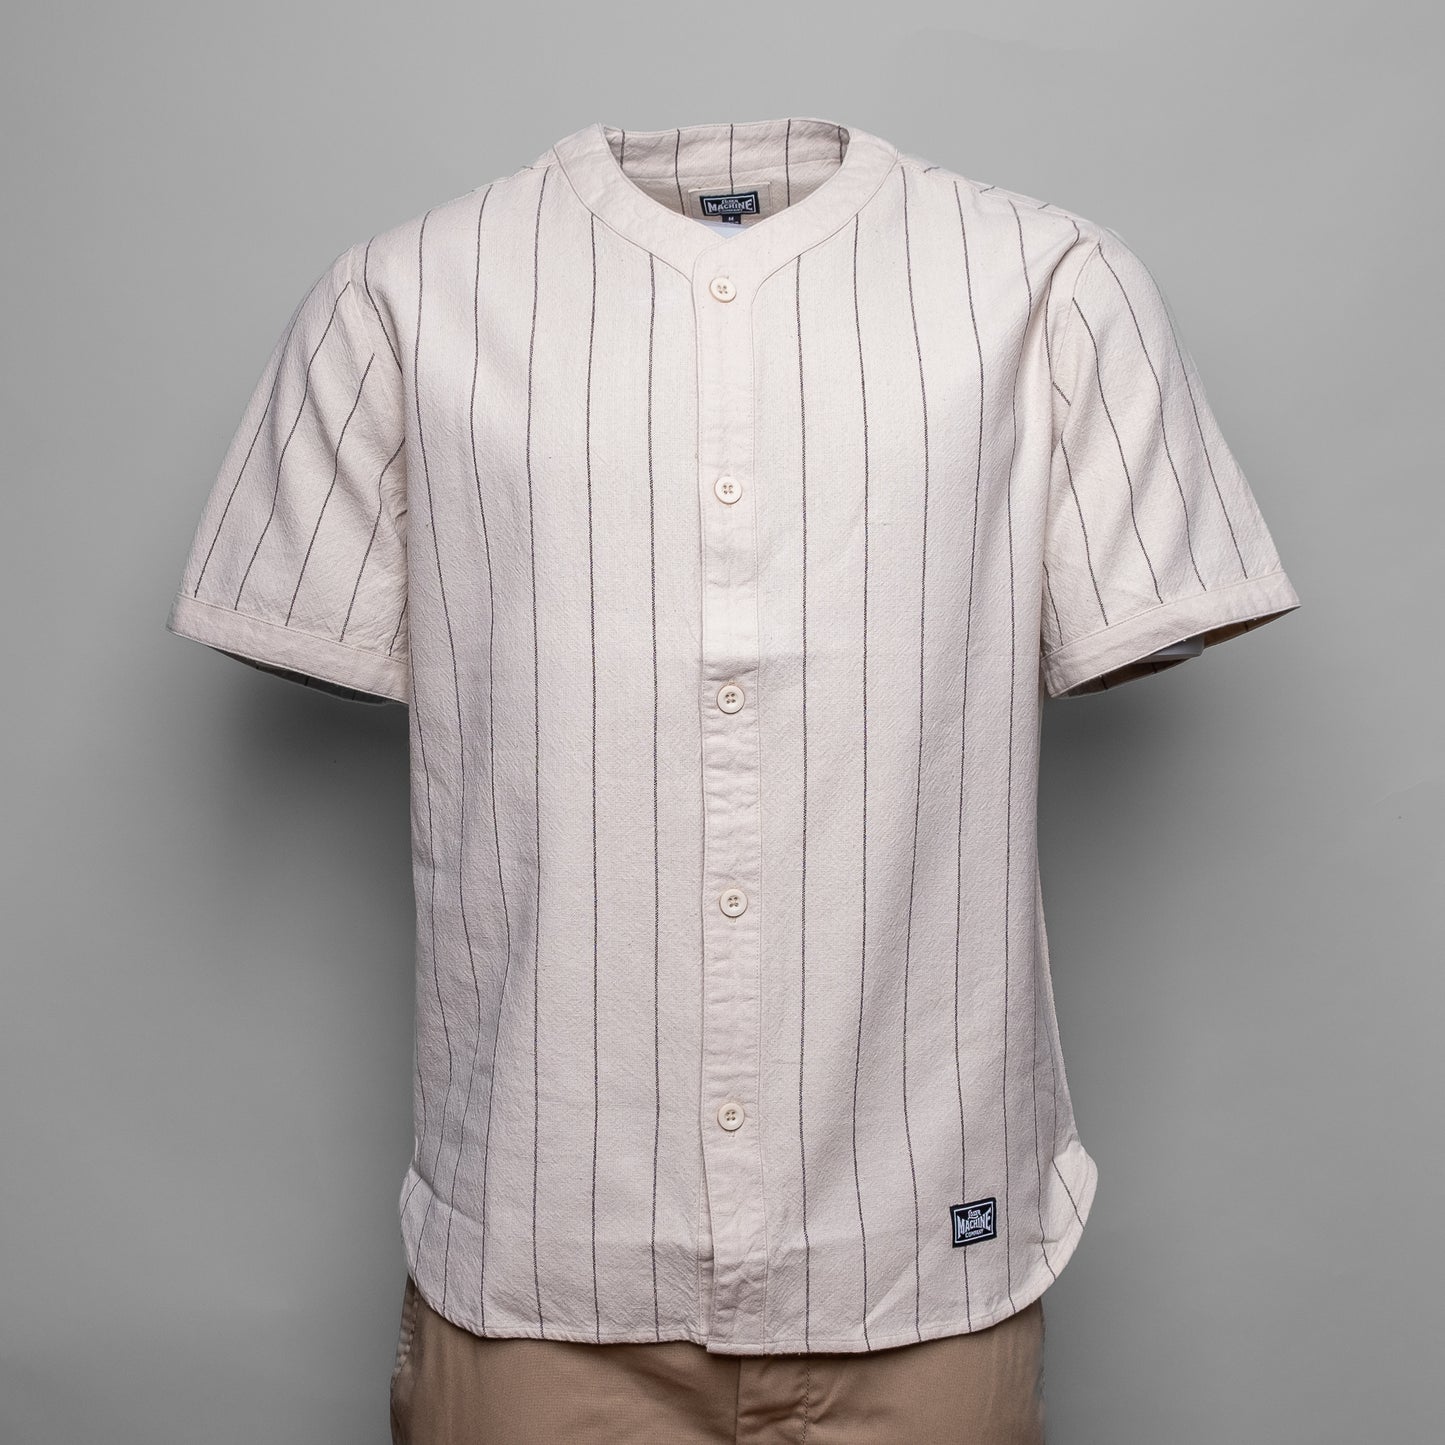 Erleben Sie Baseballfeeling mit dem Loser Machine Toros. Dieses Hemd aus gestreiftem Flanell hat alle technischen Details, die einen Baseballlook ausmacht. Mit dem Dish-Knopf, der Satinstich-Stickerei auf dem Rücken und dem abgeschrägten Saum ist das Toros von LMC ein Must-Have für jeden modebewussten Mann.